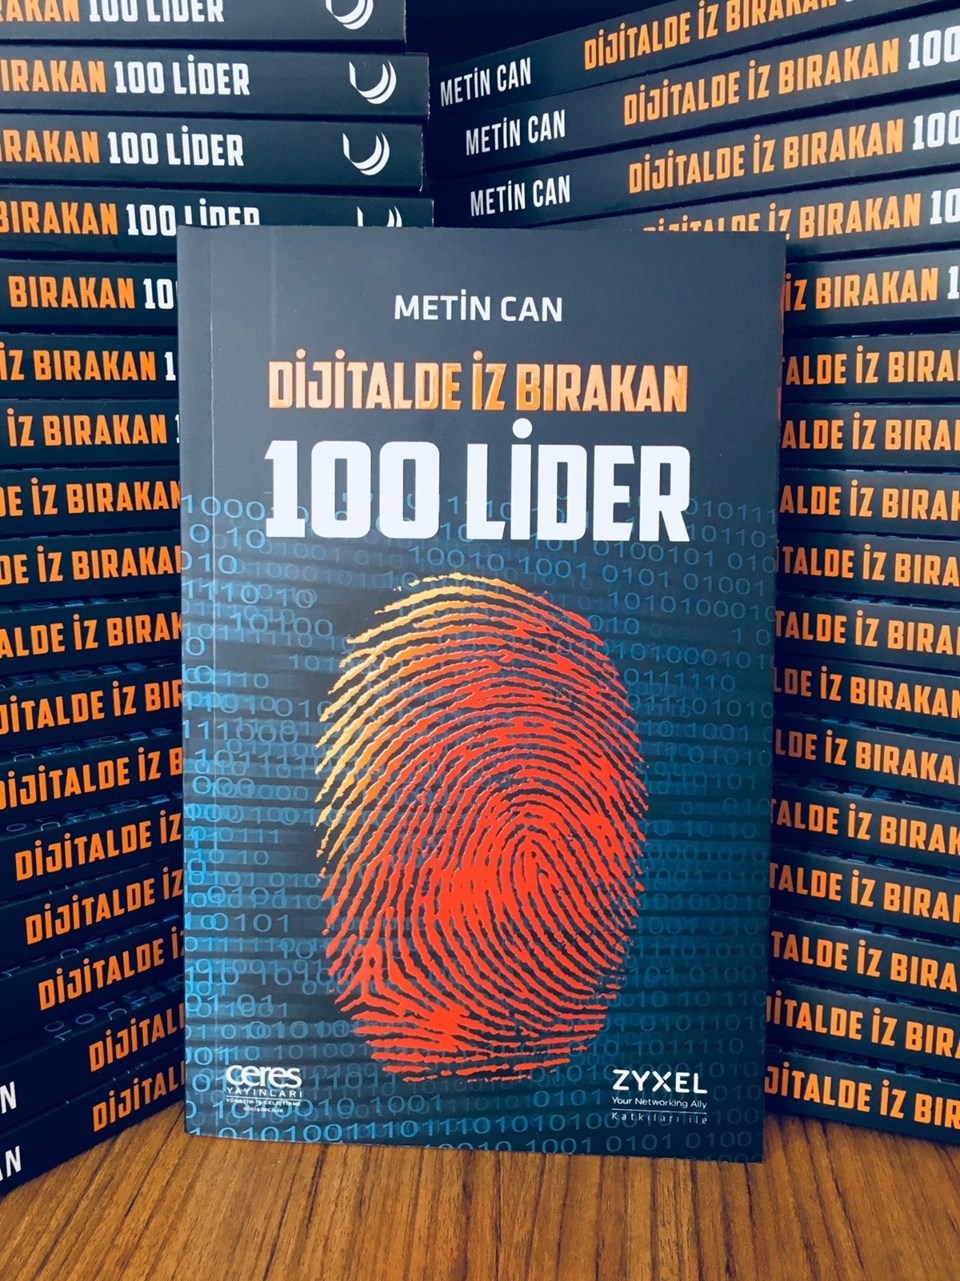 Türkiye’nin dijital dâhileri kitap oldu - 1